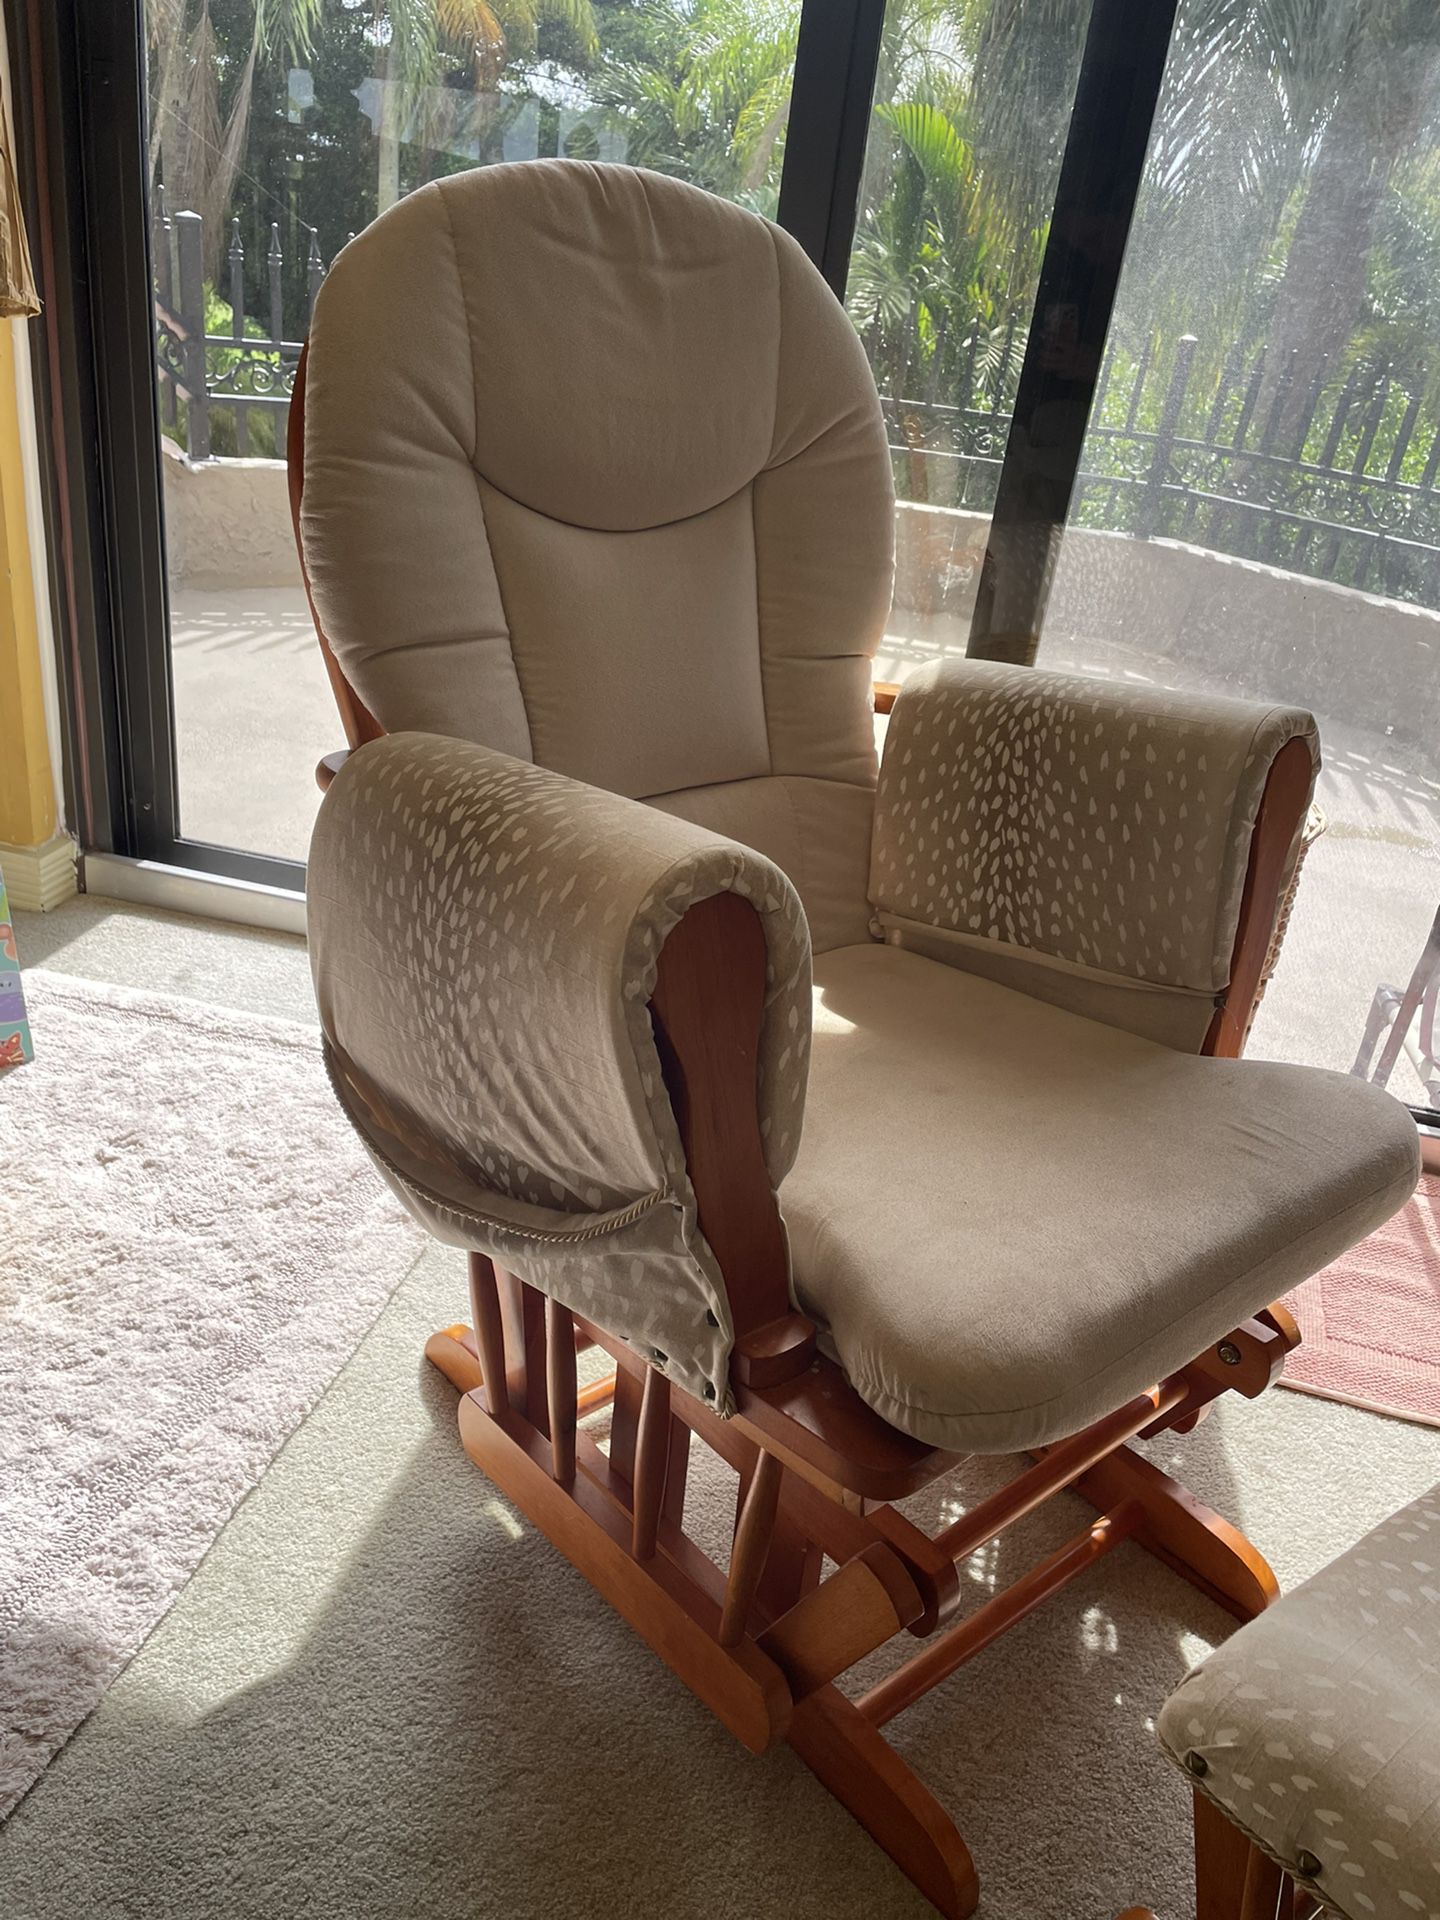 Custom Upholstered Glider Chair